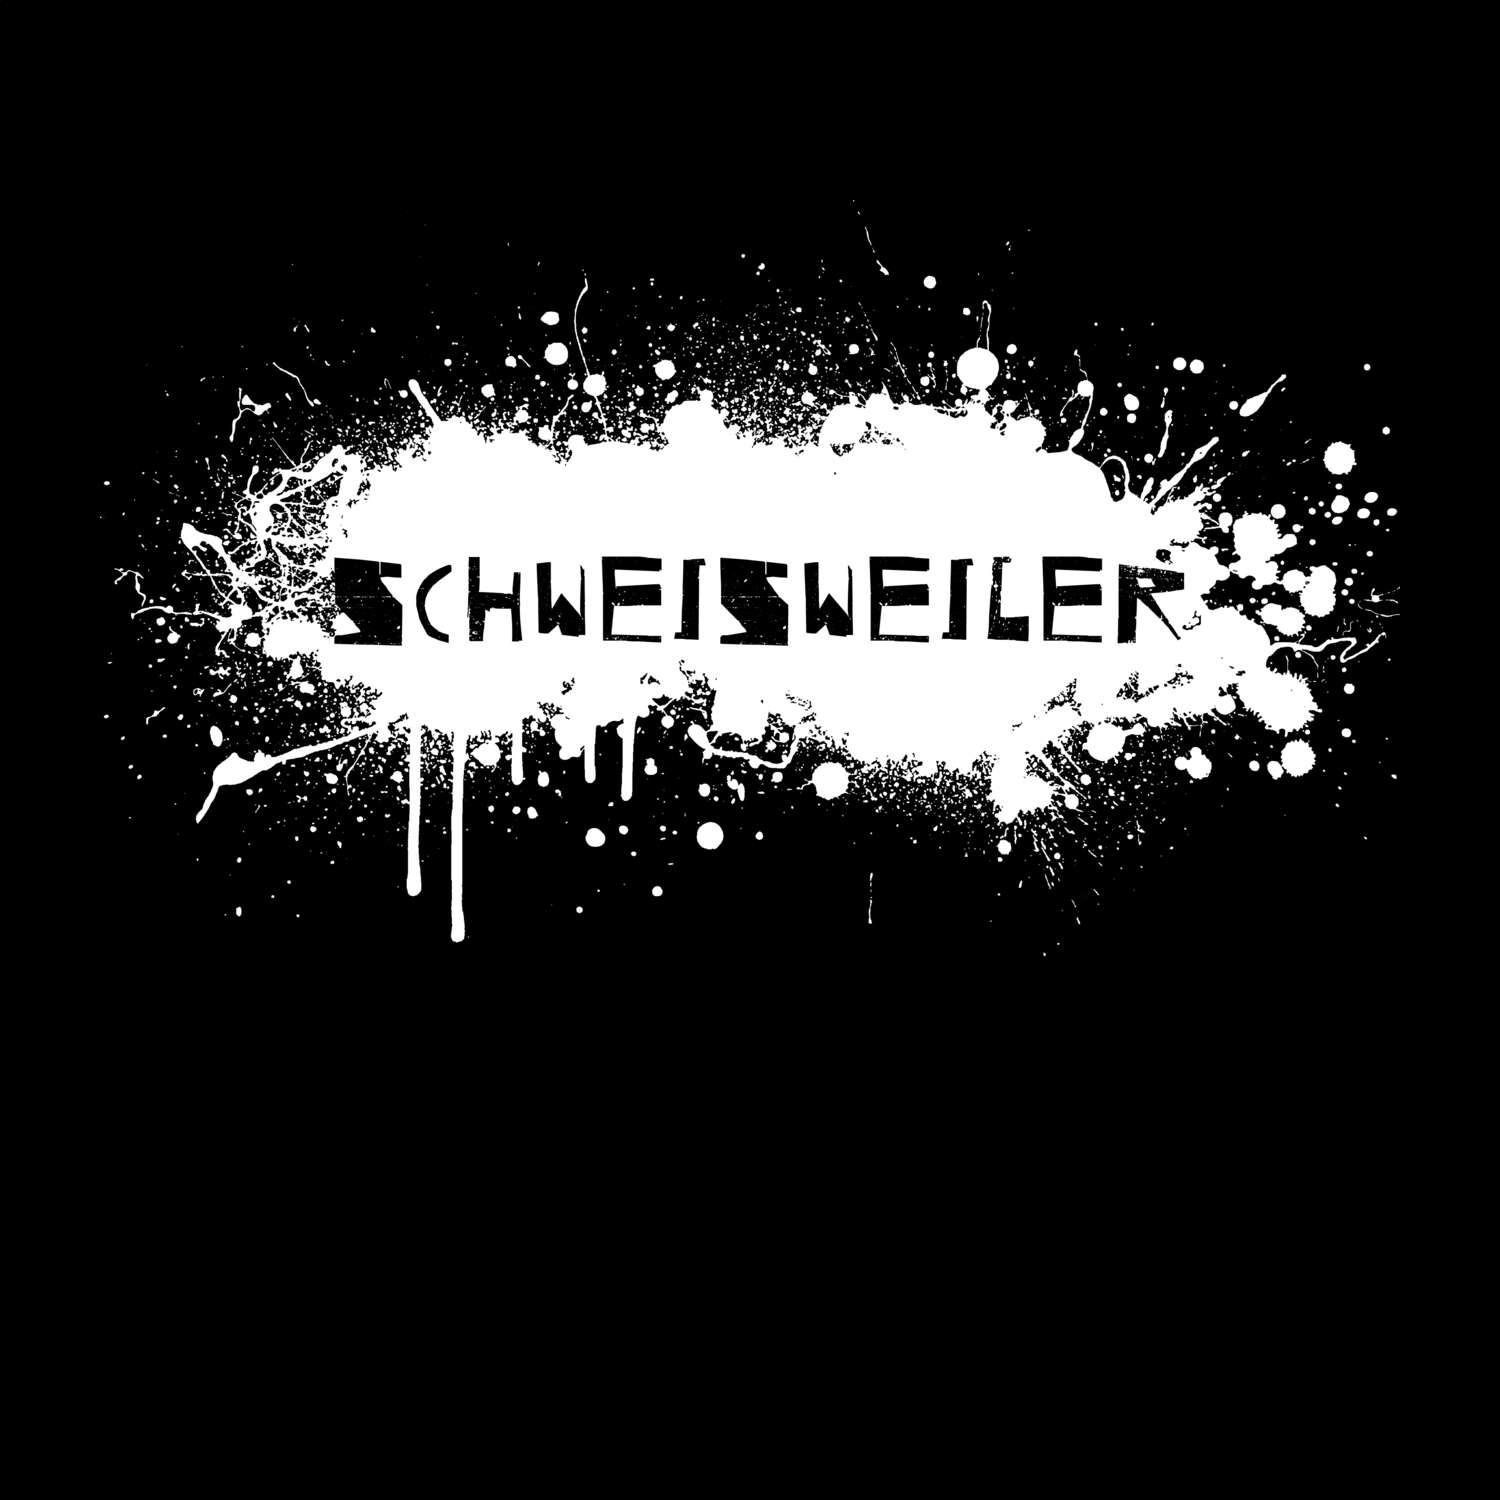 Schweisweiler T-Shirt »Paint Splash Punk«